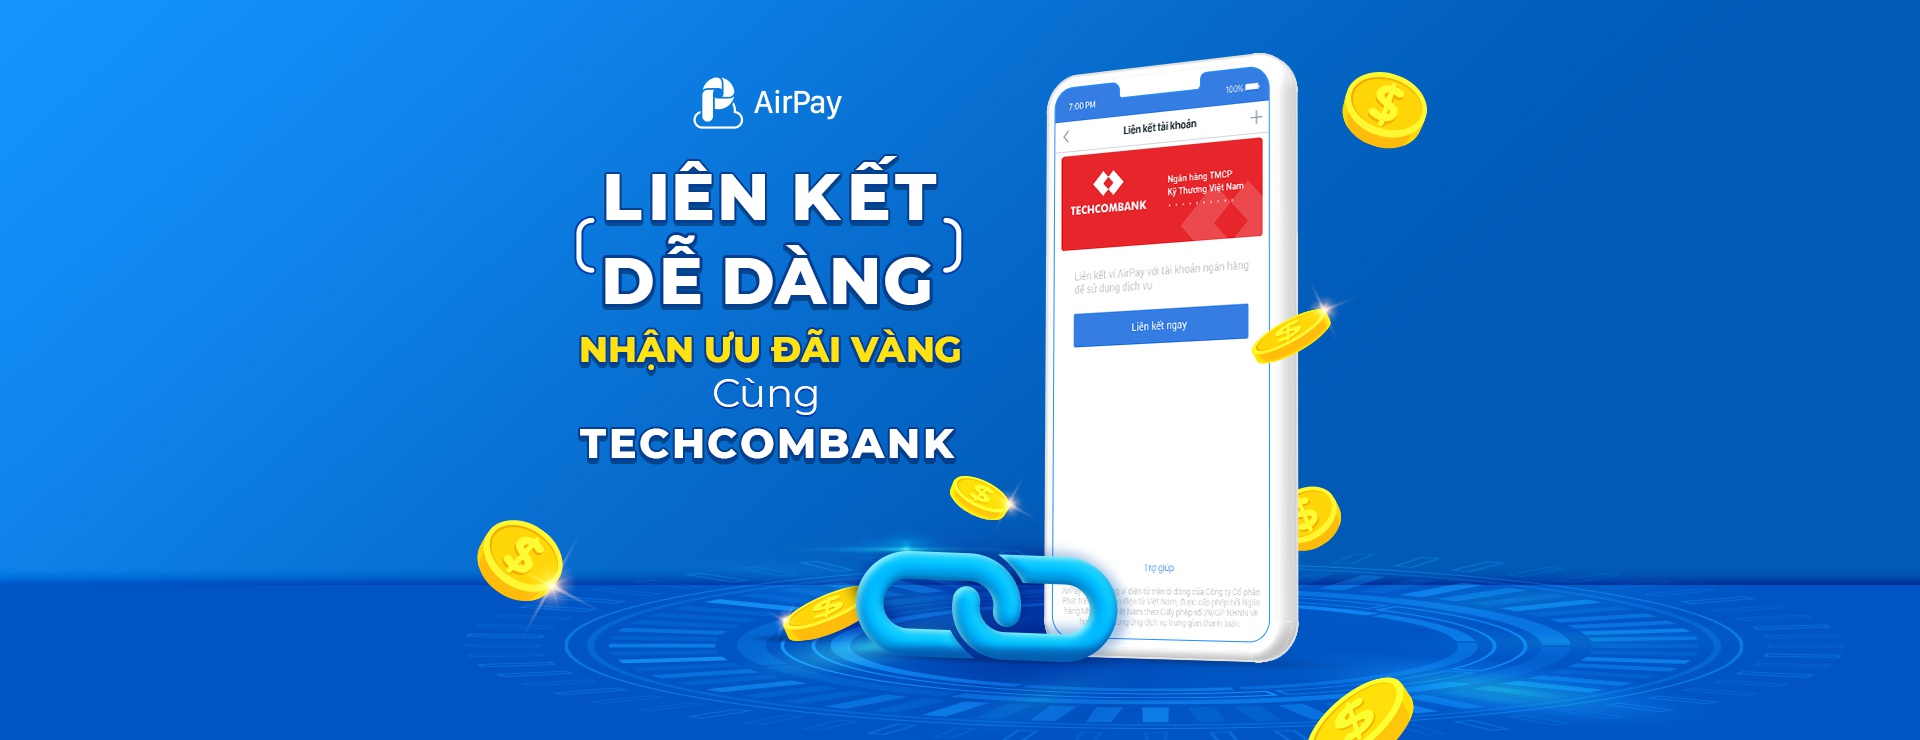 Cach-lien-ket-airpay-voi-ngan-hang-Techcombank-Visa